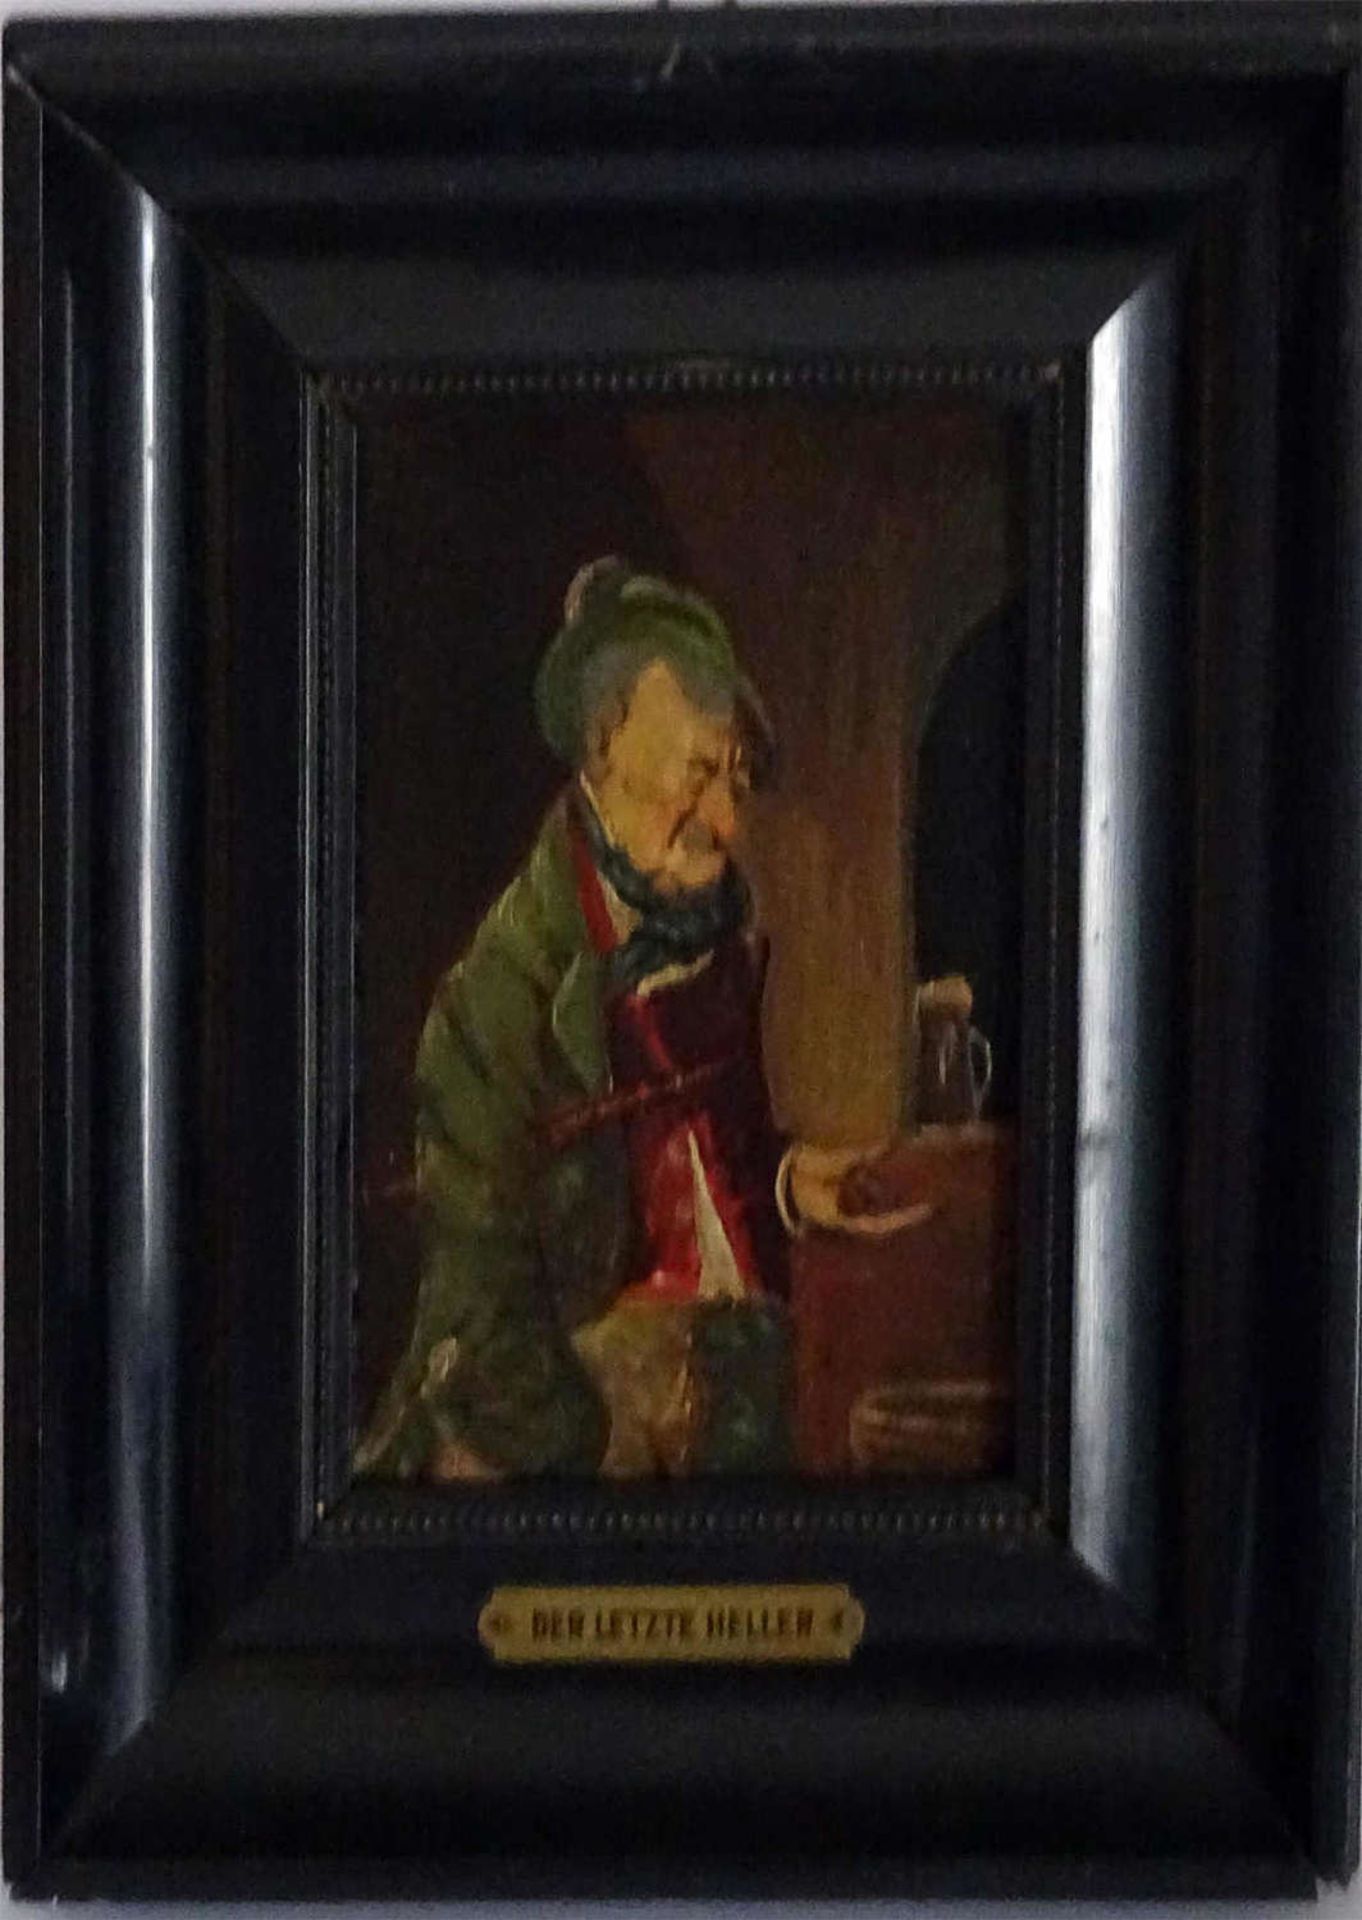 Ölgemälde auf Holzplatte "Der letzte Heller", ohne Signatur, im alten Rahmen. Innenmaße: höhe ca. 14